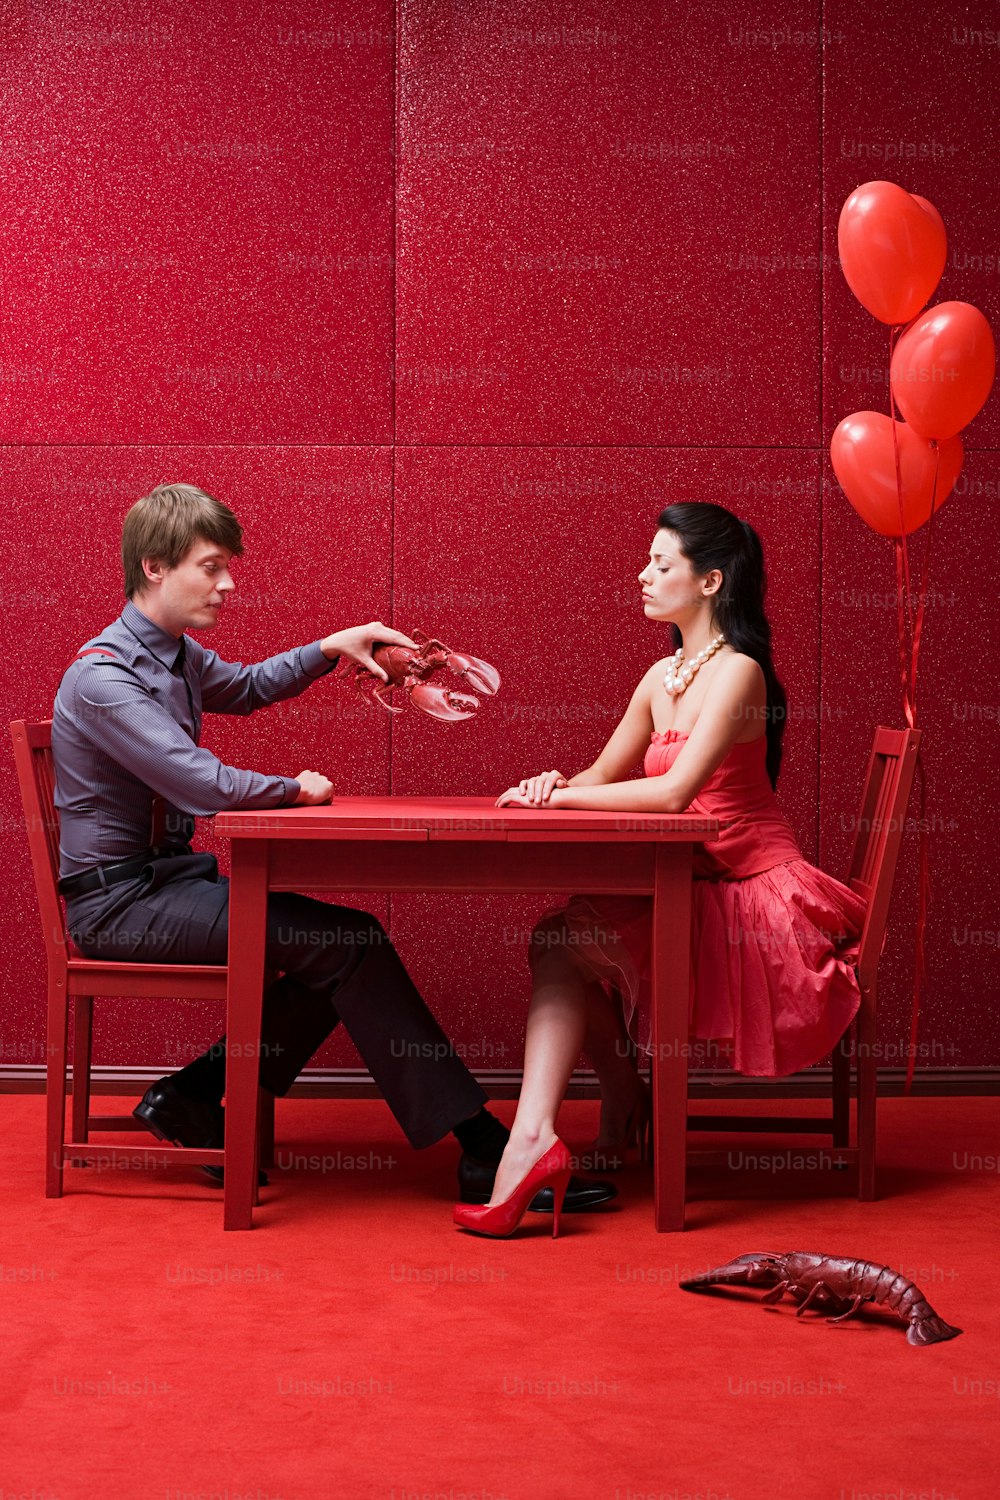 빨간 풍선이 있는 테이블에 앉아 있는 남자와 여자